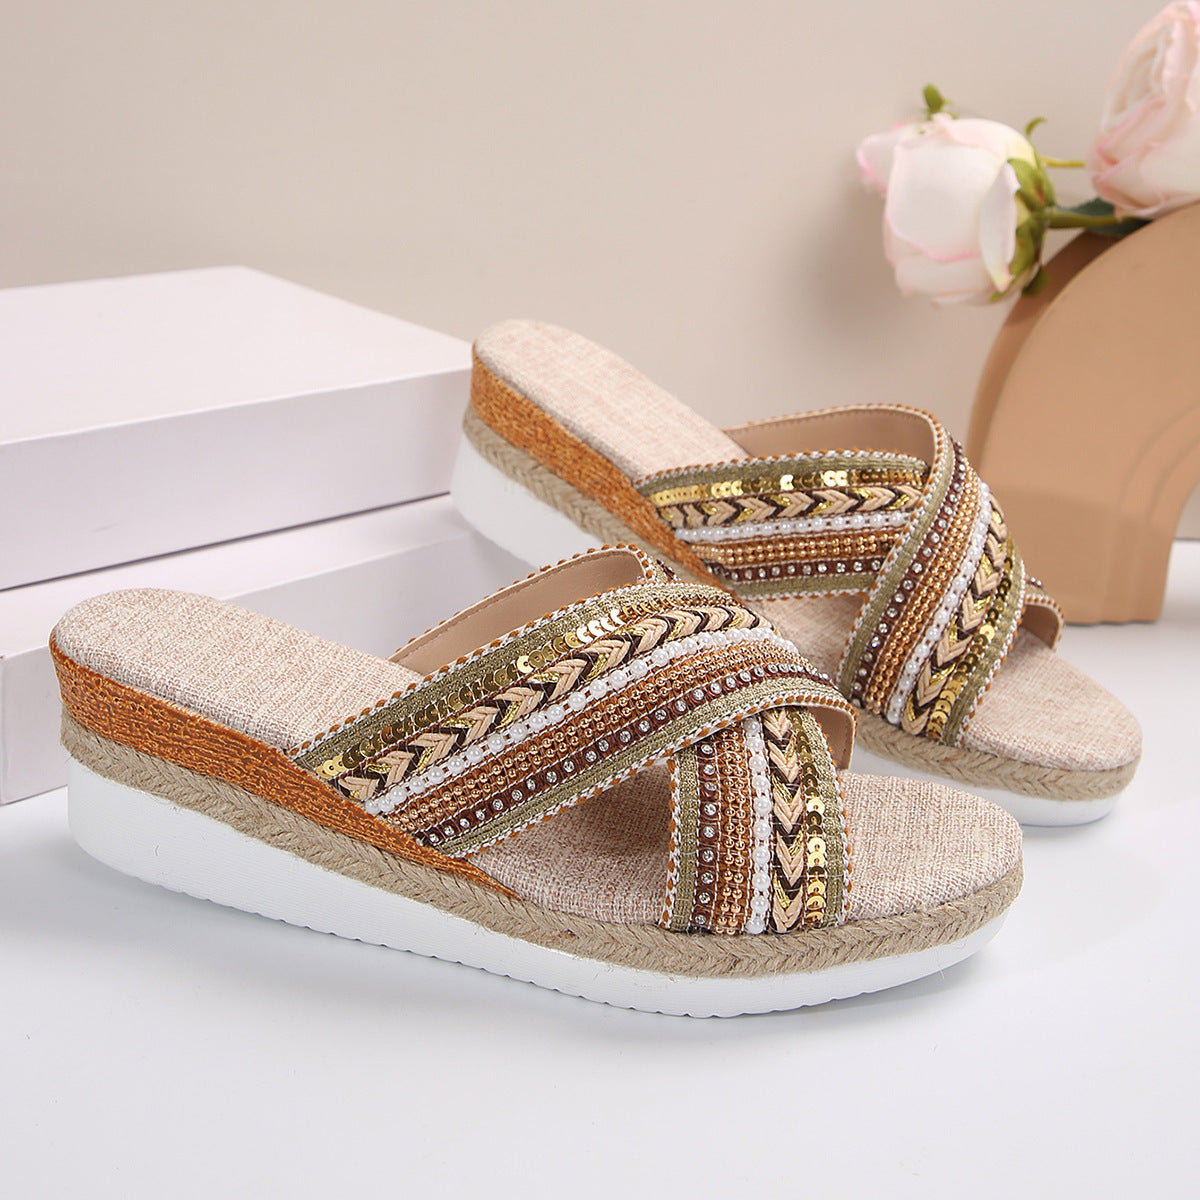 Linen, Summer Wedge Ethnic Style Cross-strap Sandals For Women Non-slip Slides